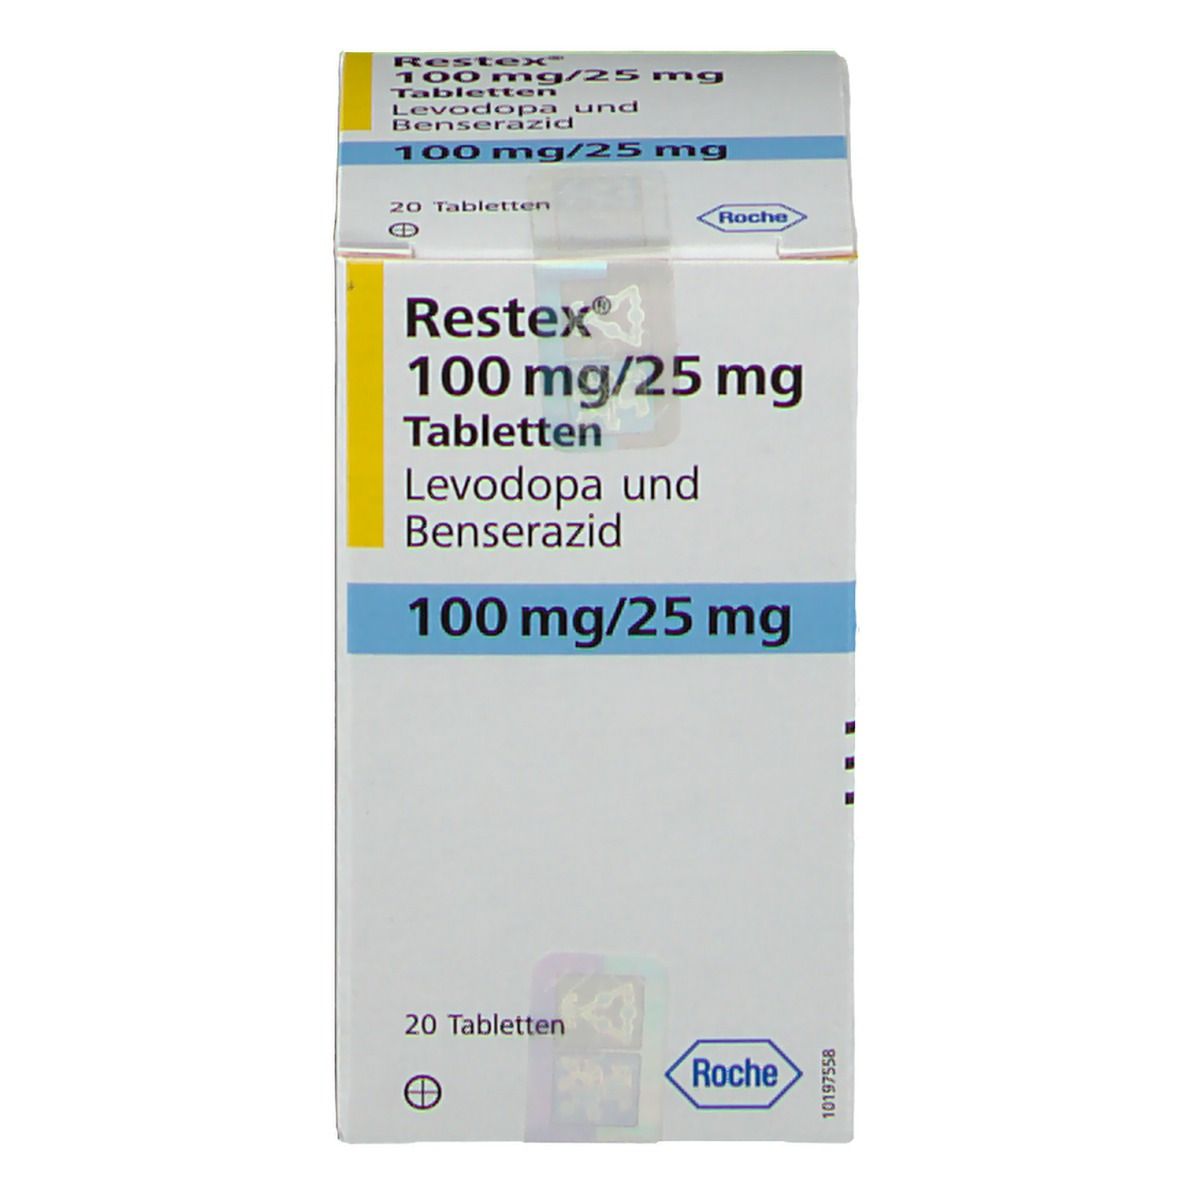 Restex® 100 mg/25 mg